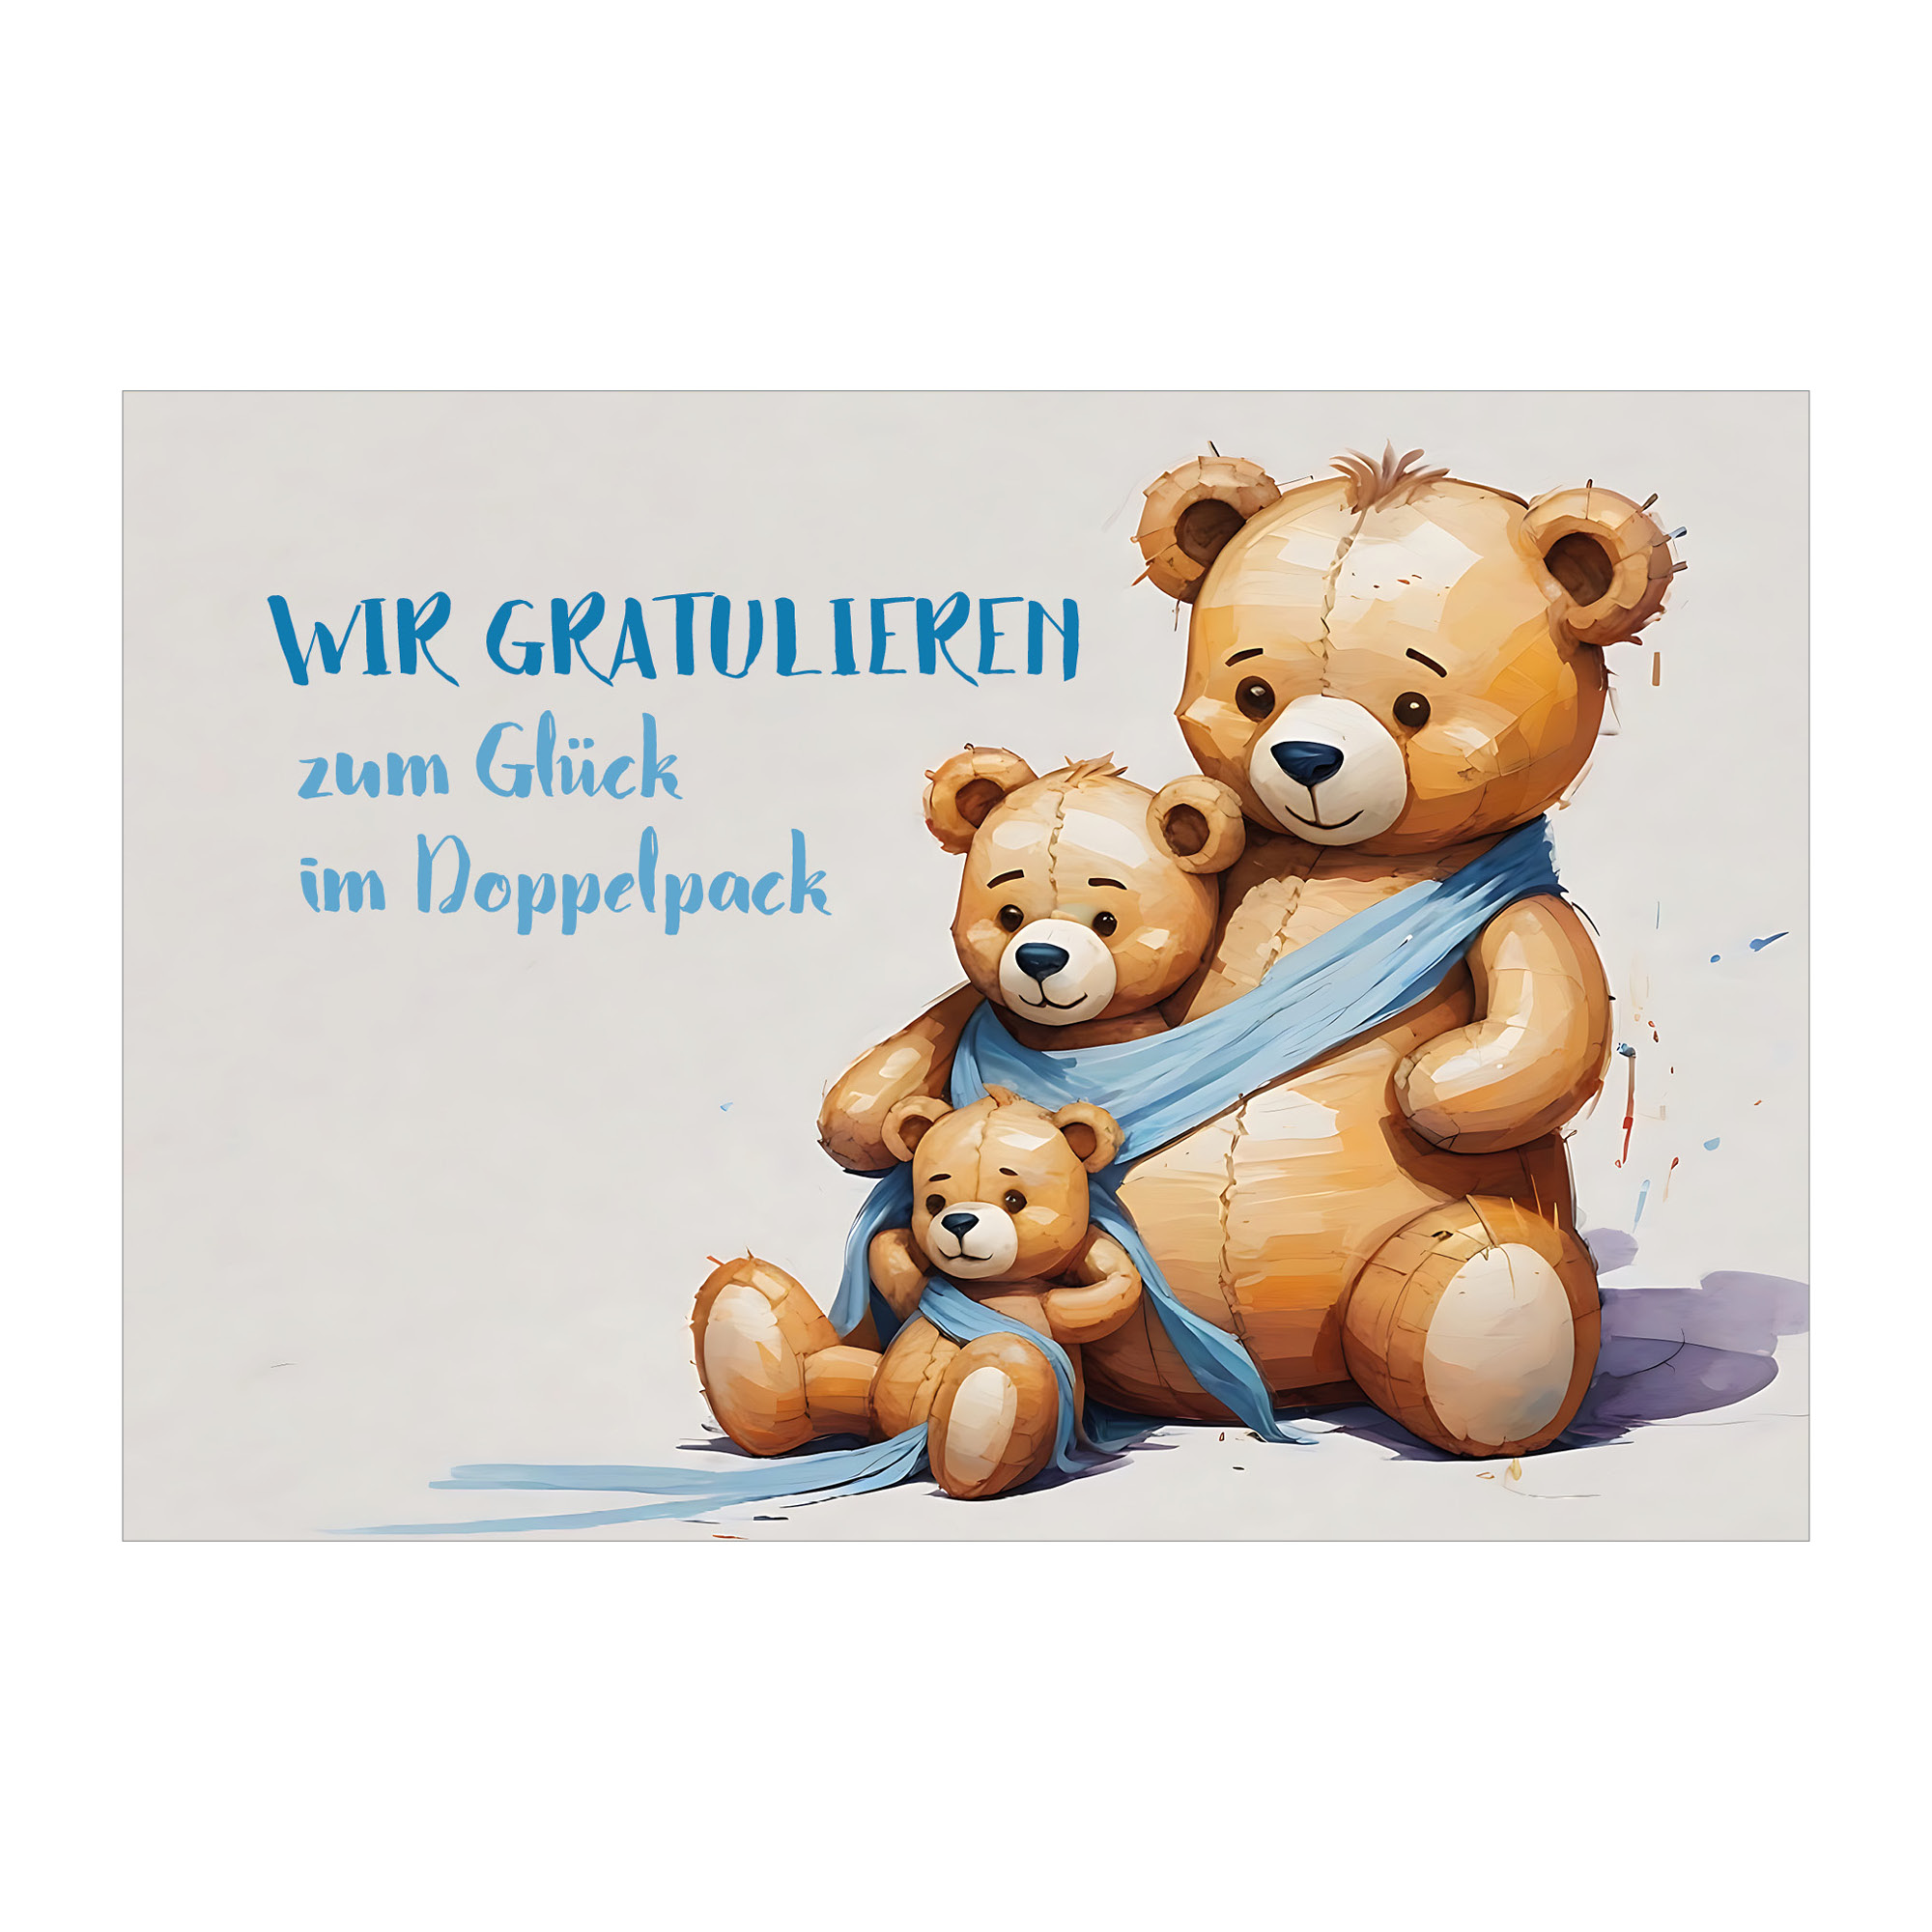 Niedliche Glückwunschkarte zur Geburt von Zwillingen mit Teddy-Bär 1 nachhaltige Klapp Grußkarte made in germany von Kartenkaufrausch.de